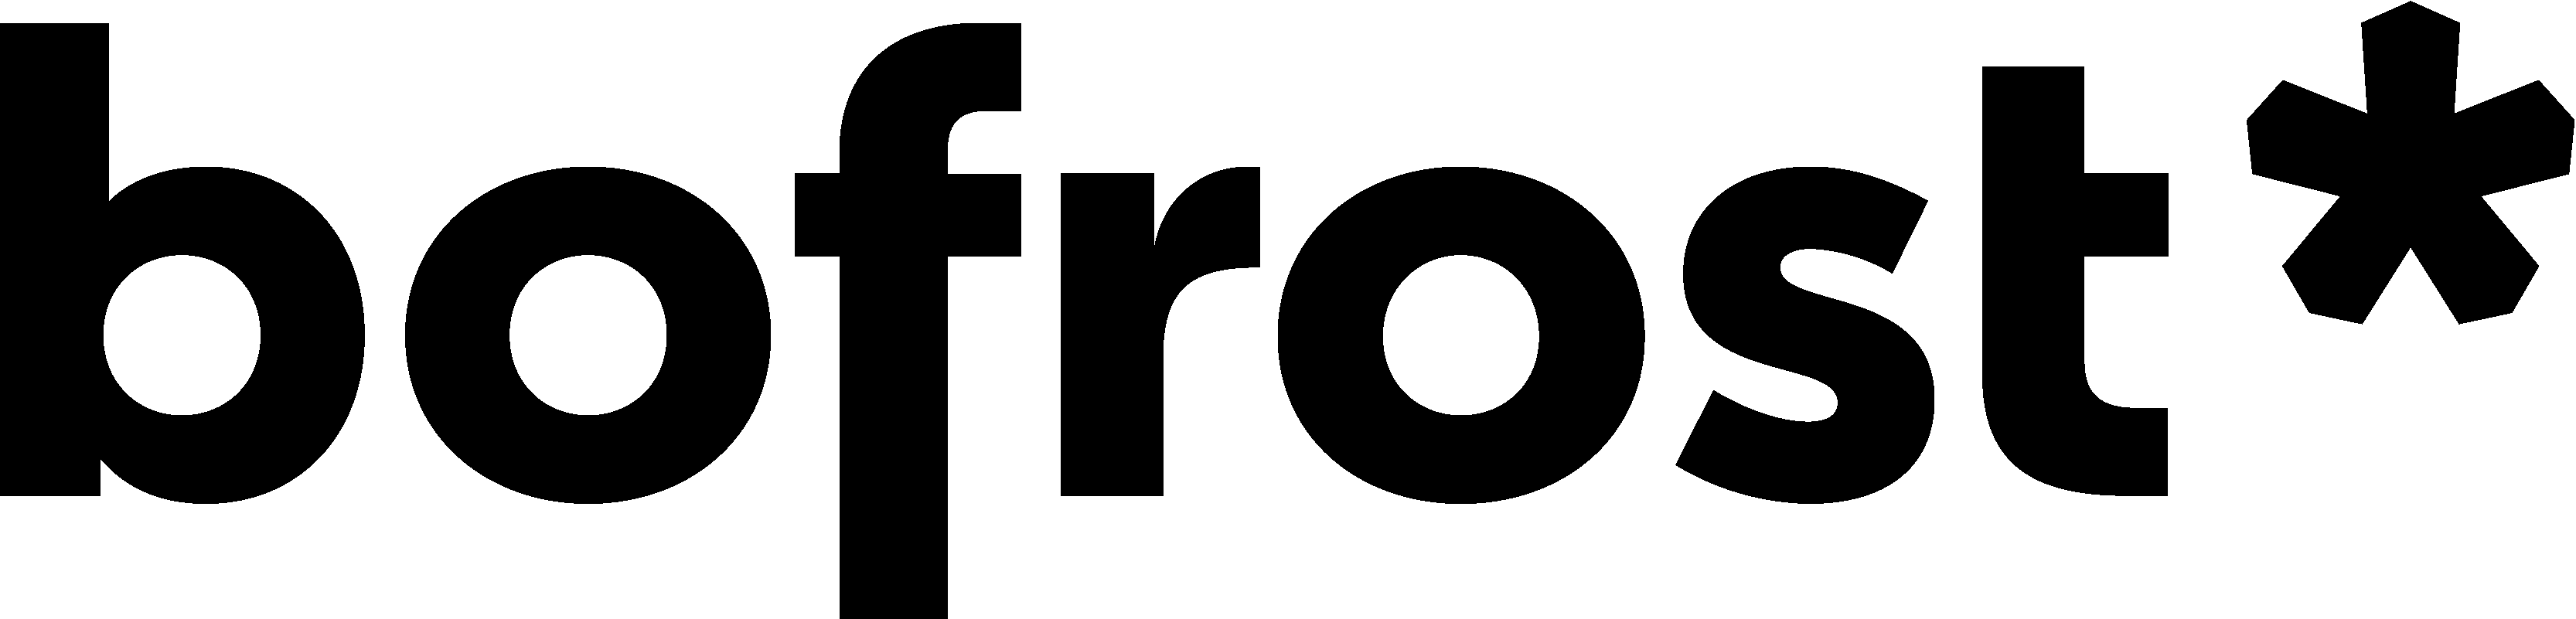 Logo von bofrost, Kunden der Werbeagentur twoseconds